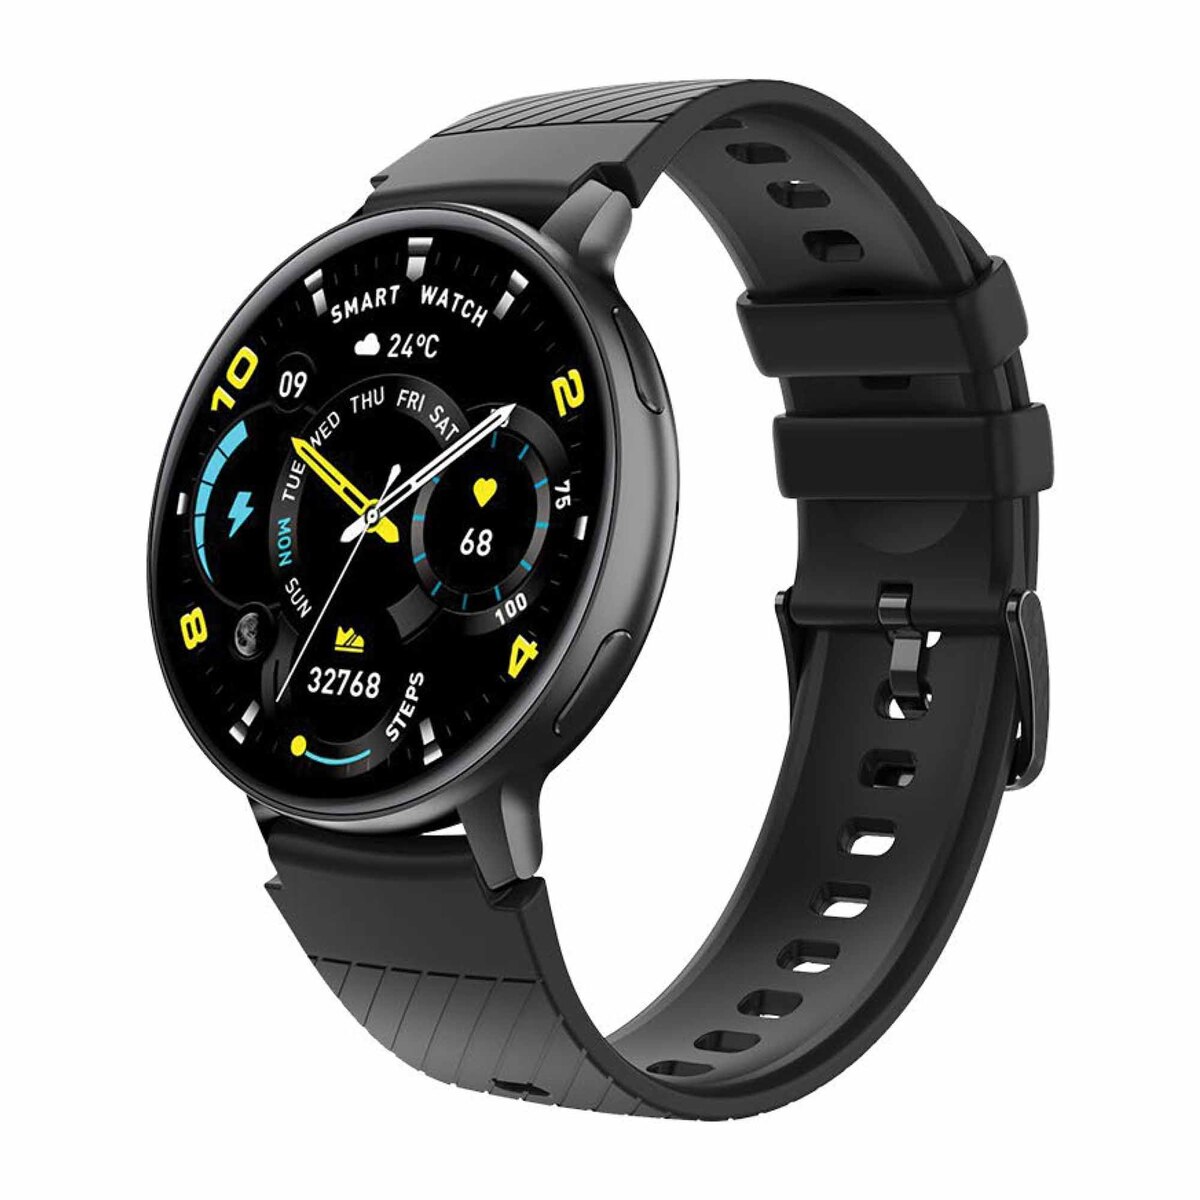 Totu Smart Watch SW-S53 Black